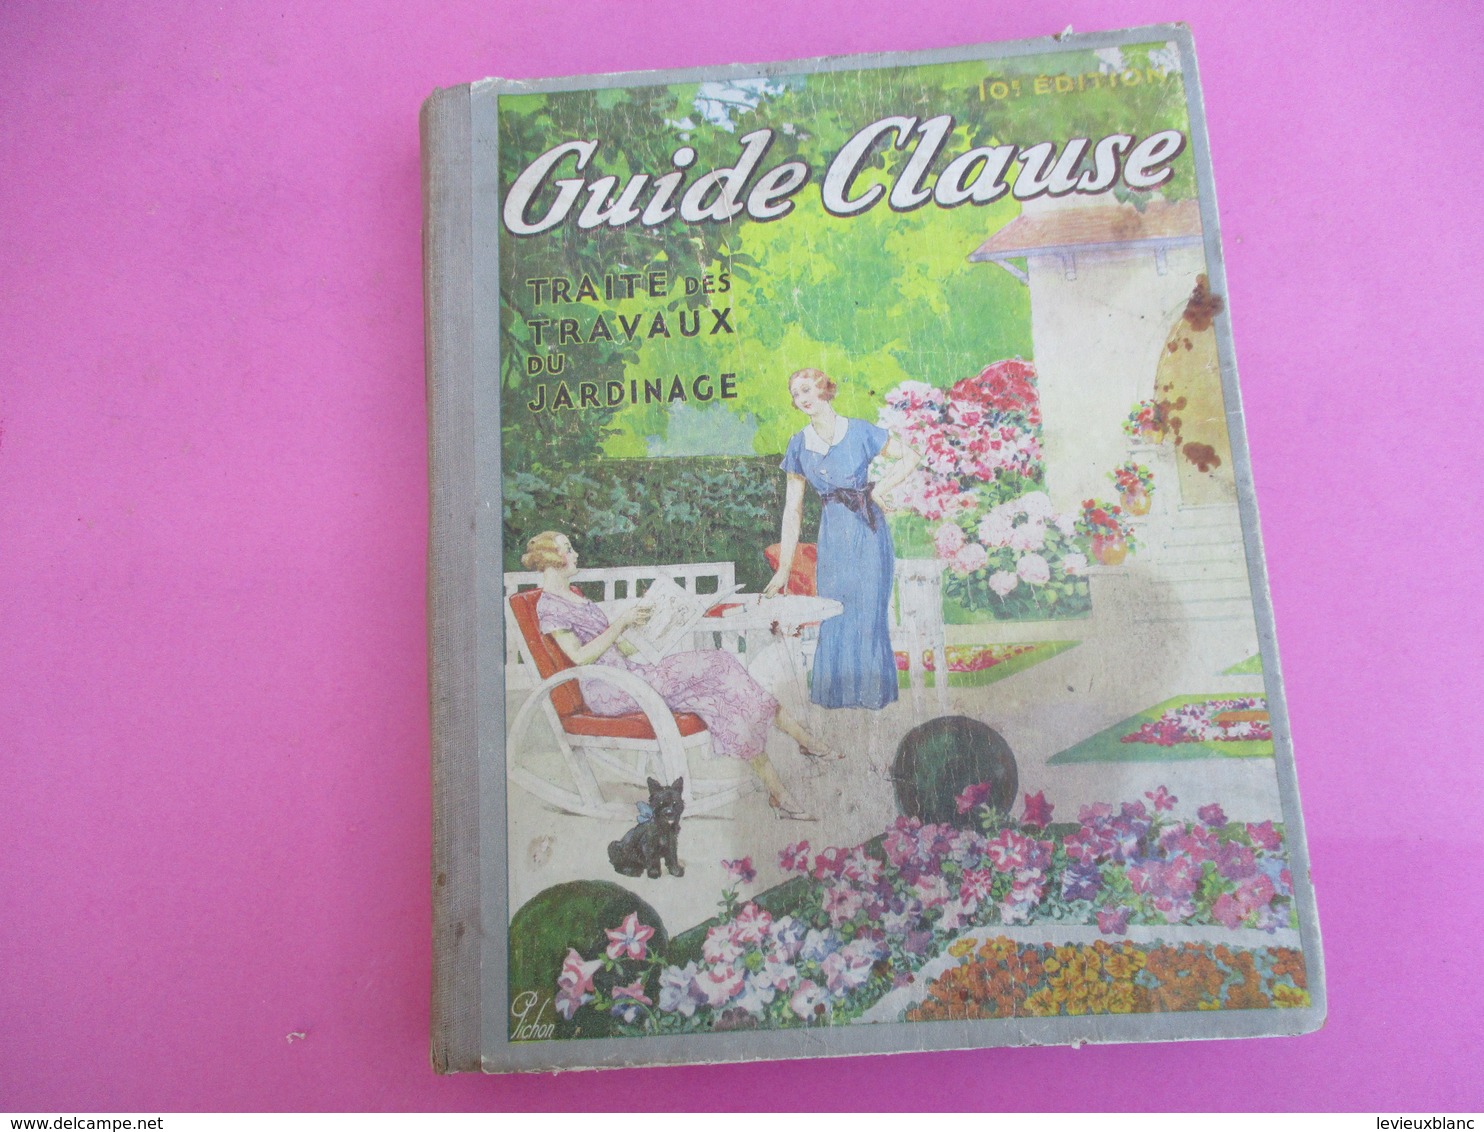 Guide CLAUSE/ 10éme Edition /Traité Des Travaux Du Jardinage/BRETIGNY Sur ORGE/ S & O /Pichon/ Diéval/ 1935      CAT240 - Garden